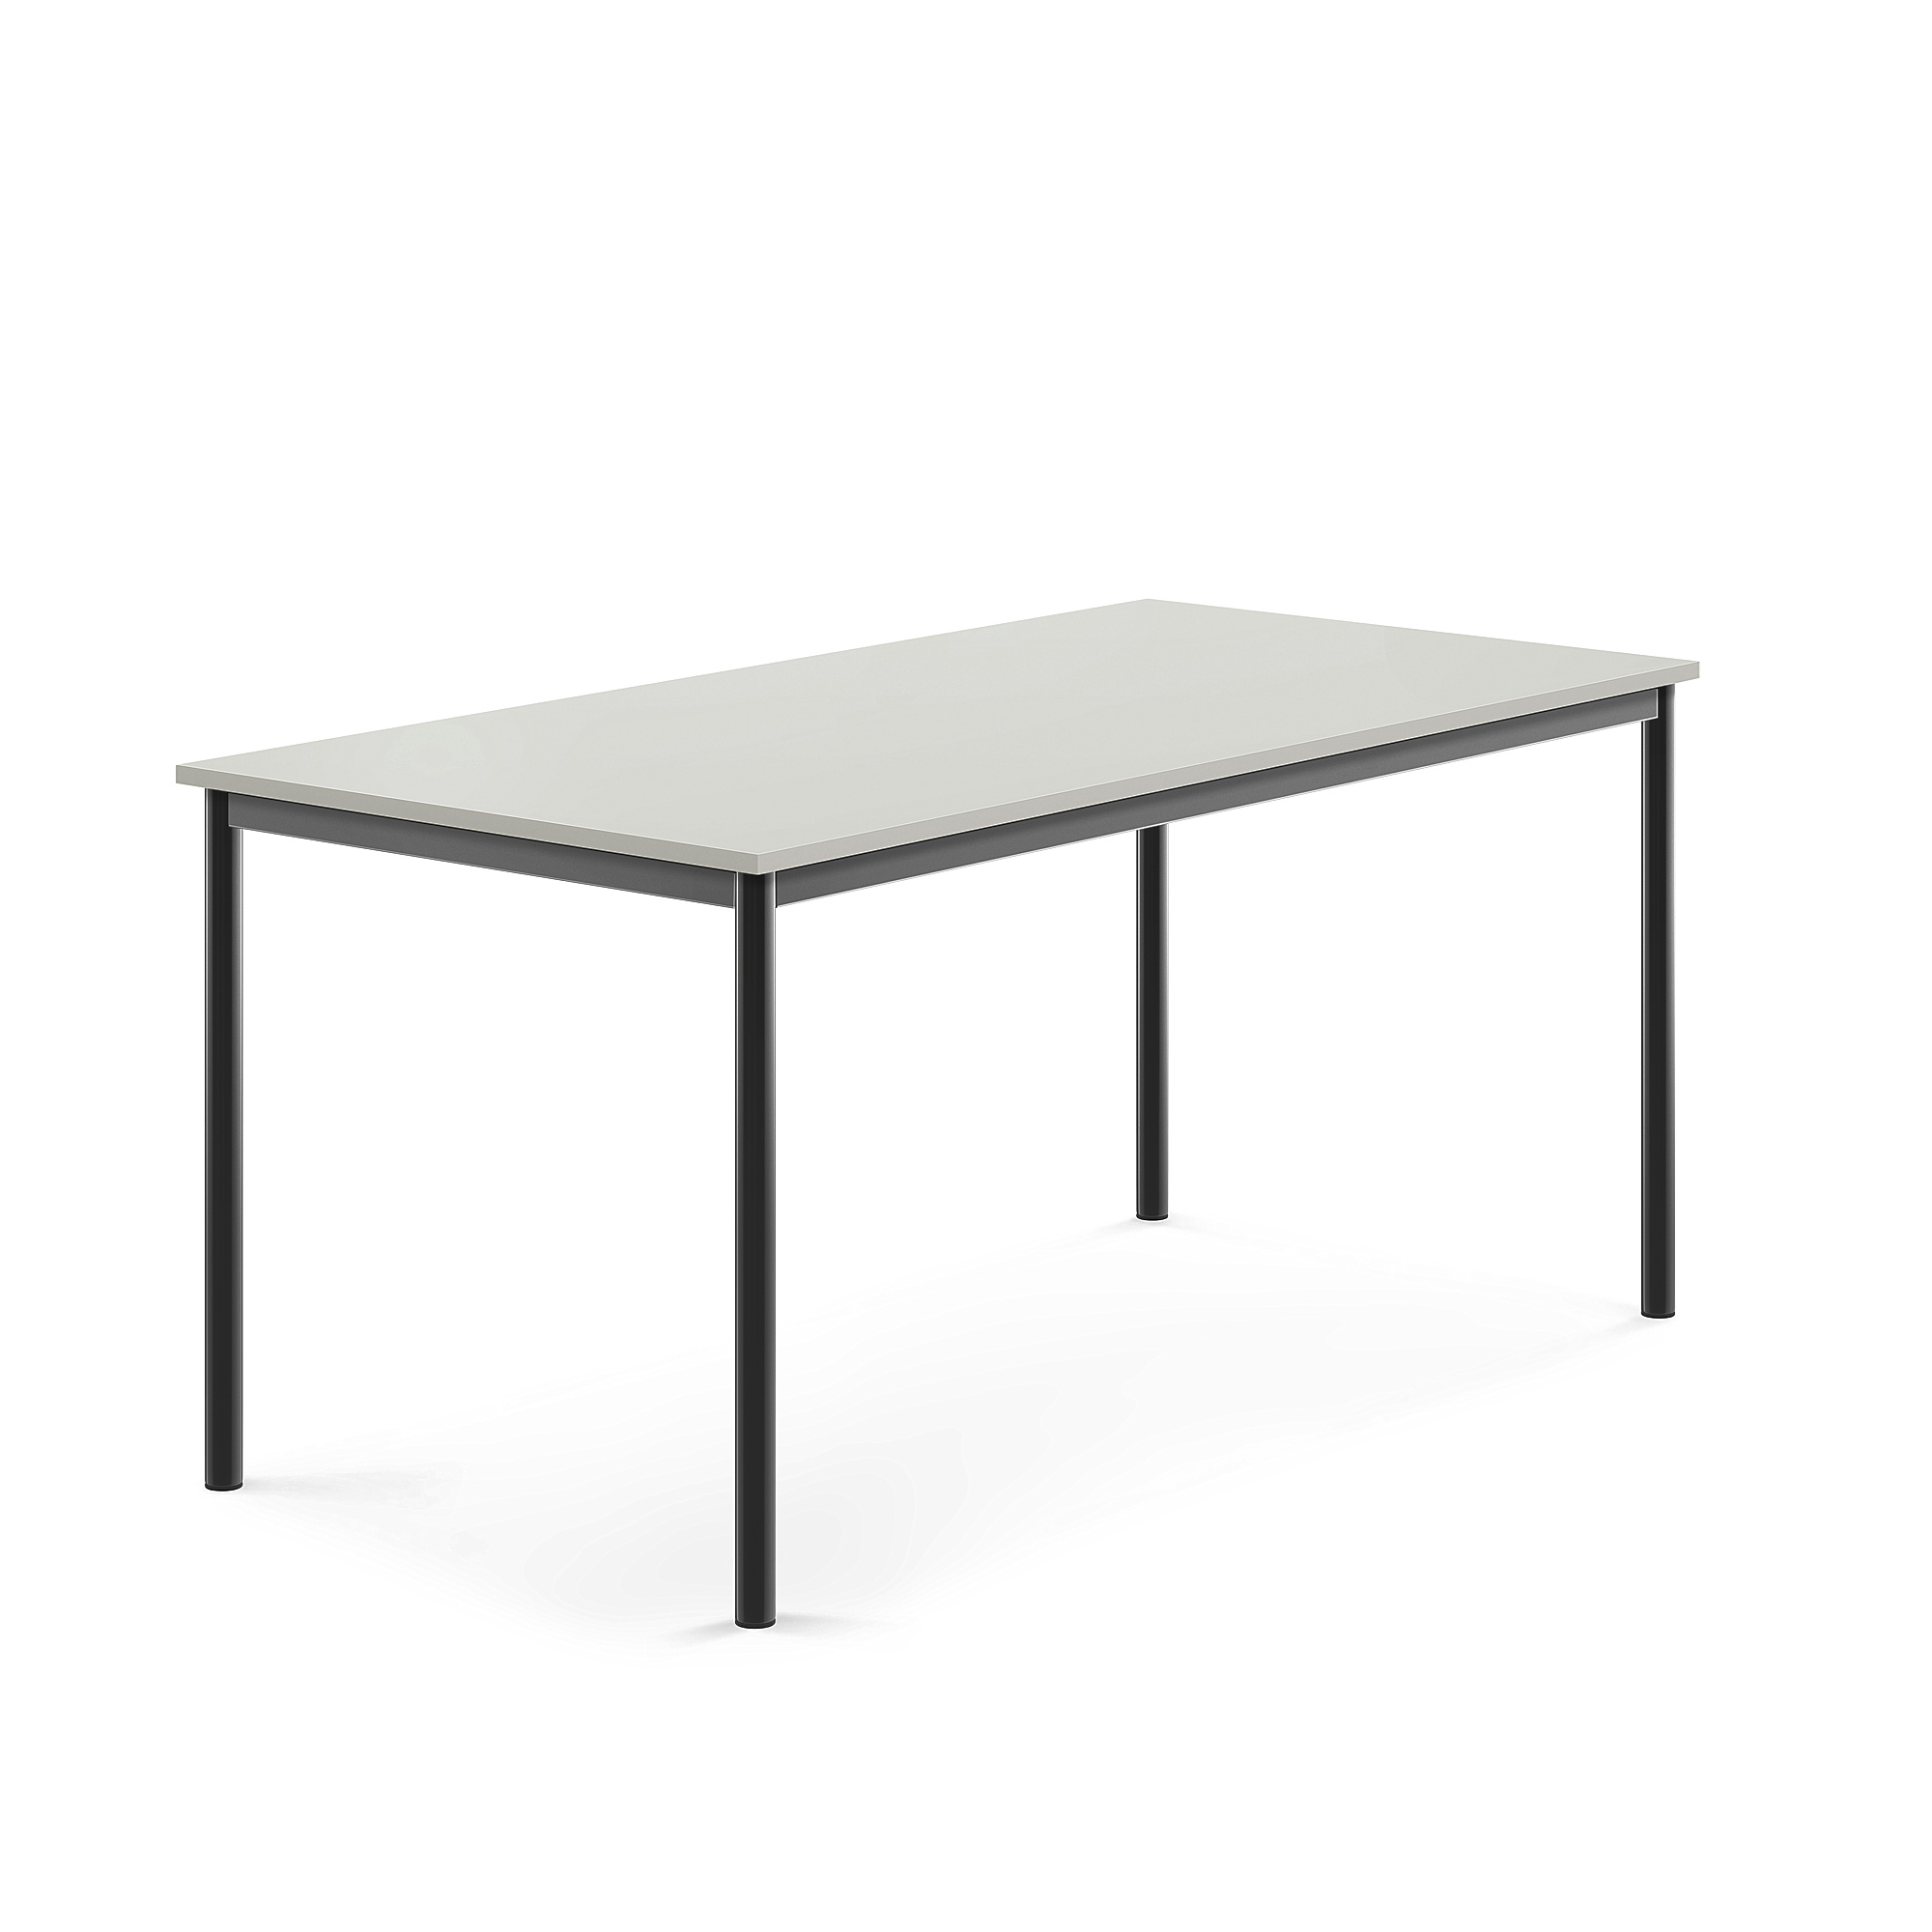 Stůl SONITUS, 1600x800x720 mm, antracitově šedé nohy, HPL deska tlumící hluk, šedá